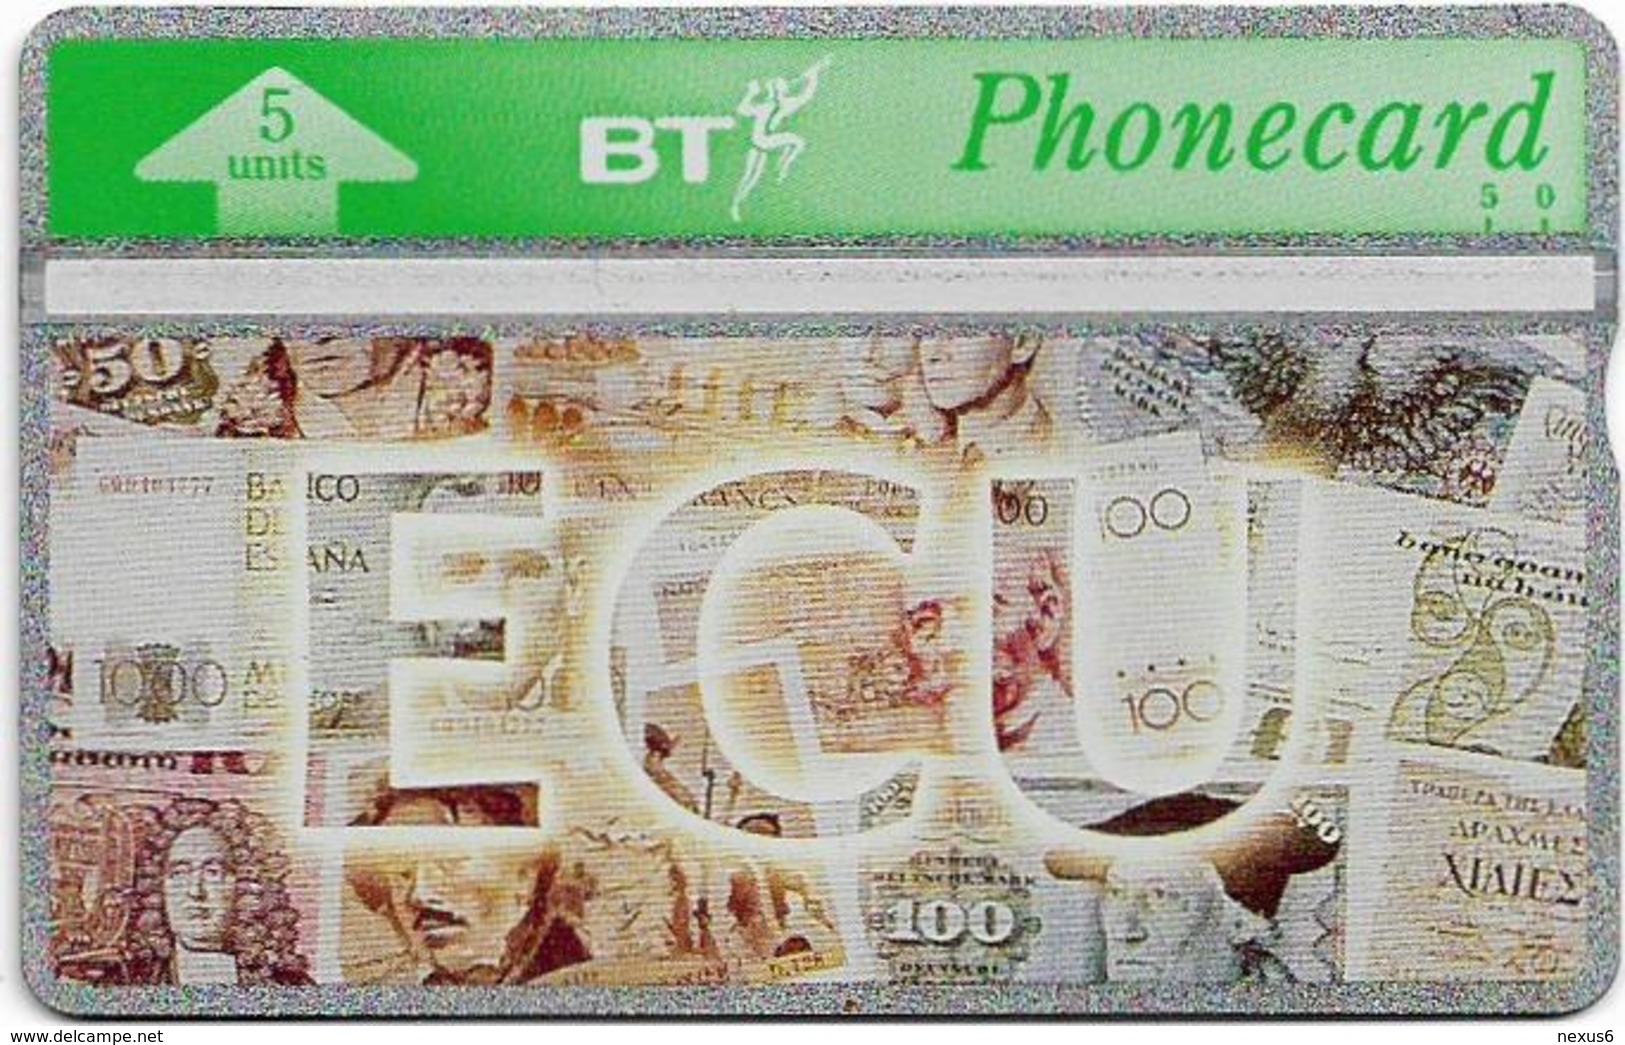 UK - BT - L&G - BTO-037 - ECU, Banknotes - 306C - 5U, 1993, 5.000ex, Mint - BT Edición Extranjera